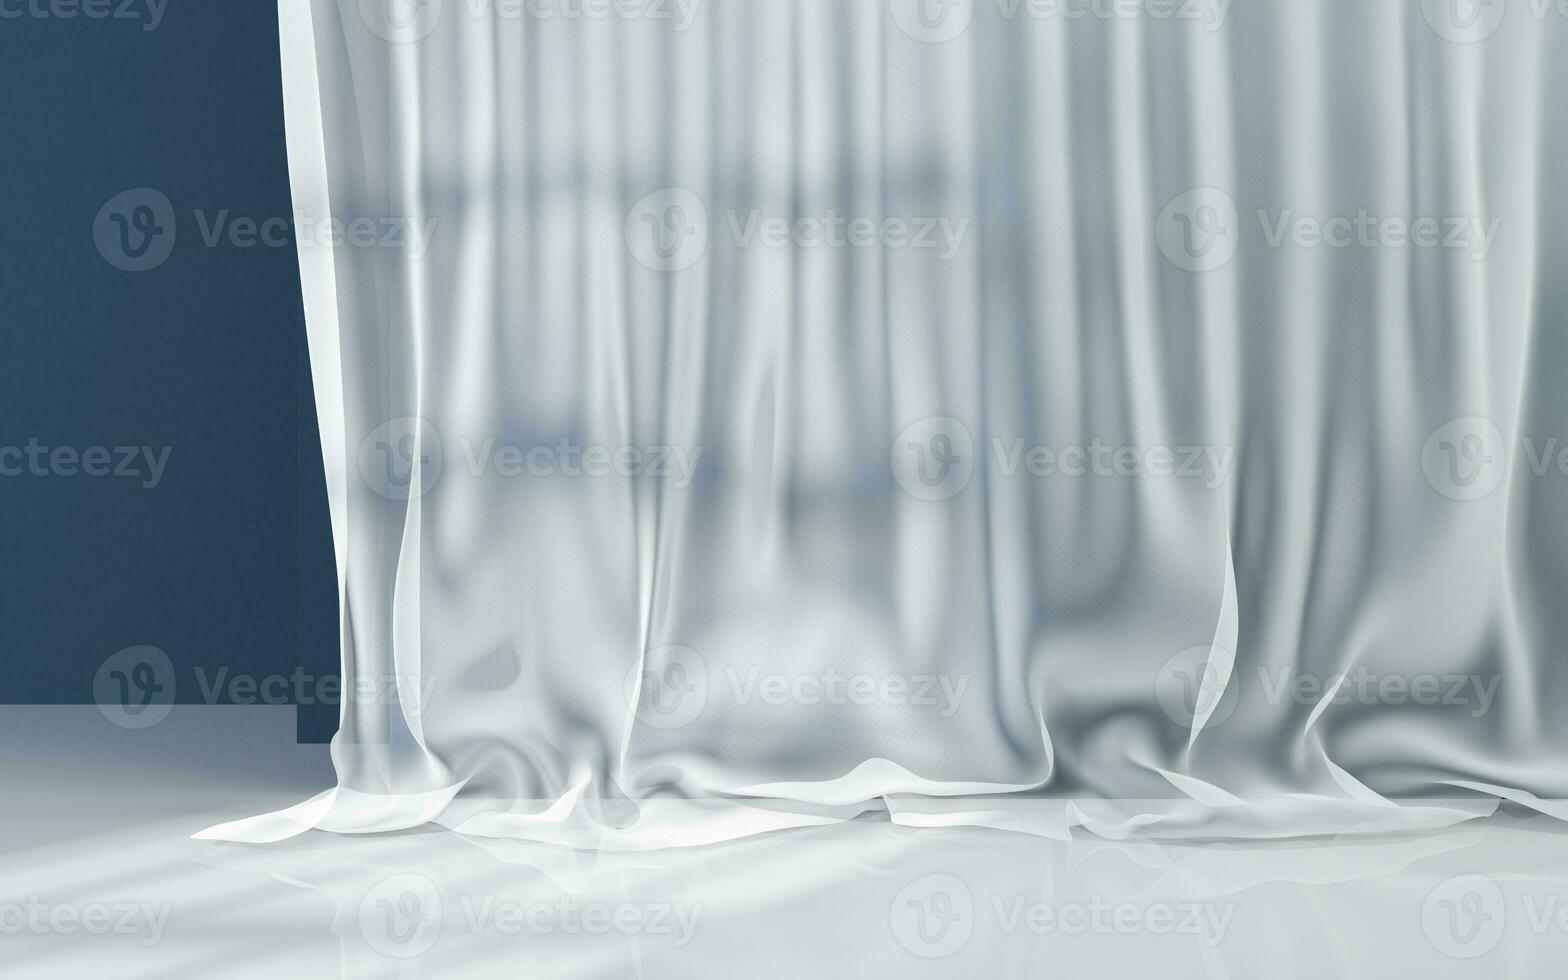 vertikal gardiner i en tömma rum, 3d tolkning. foto